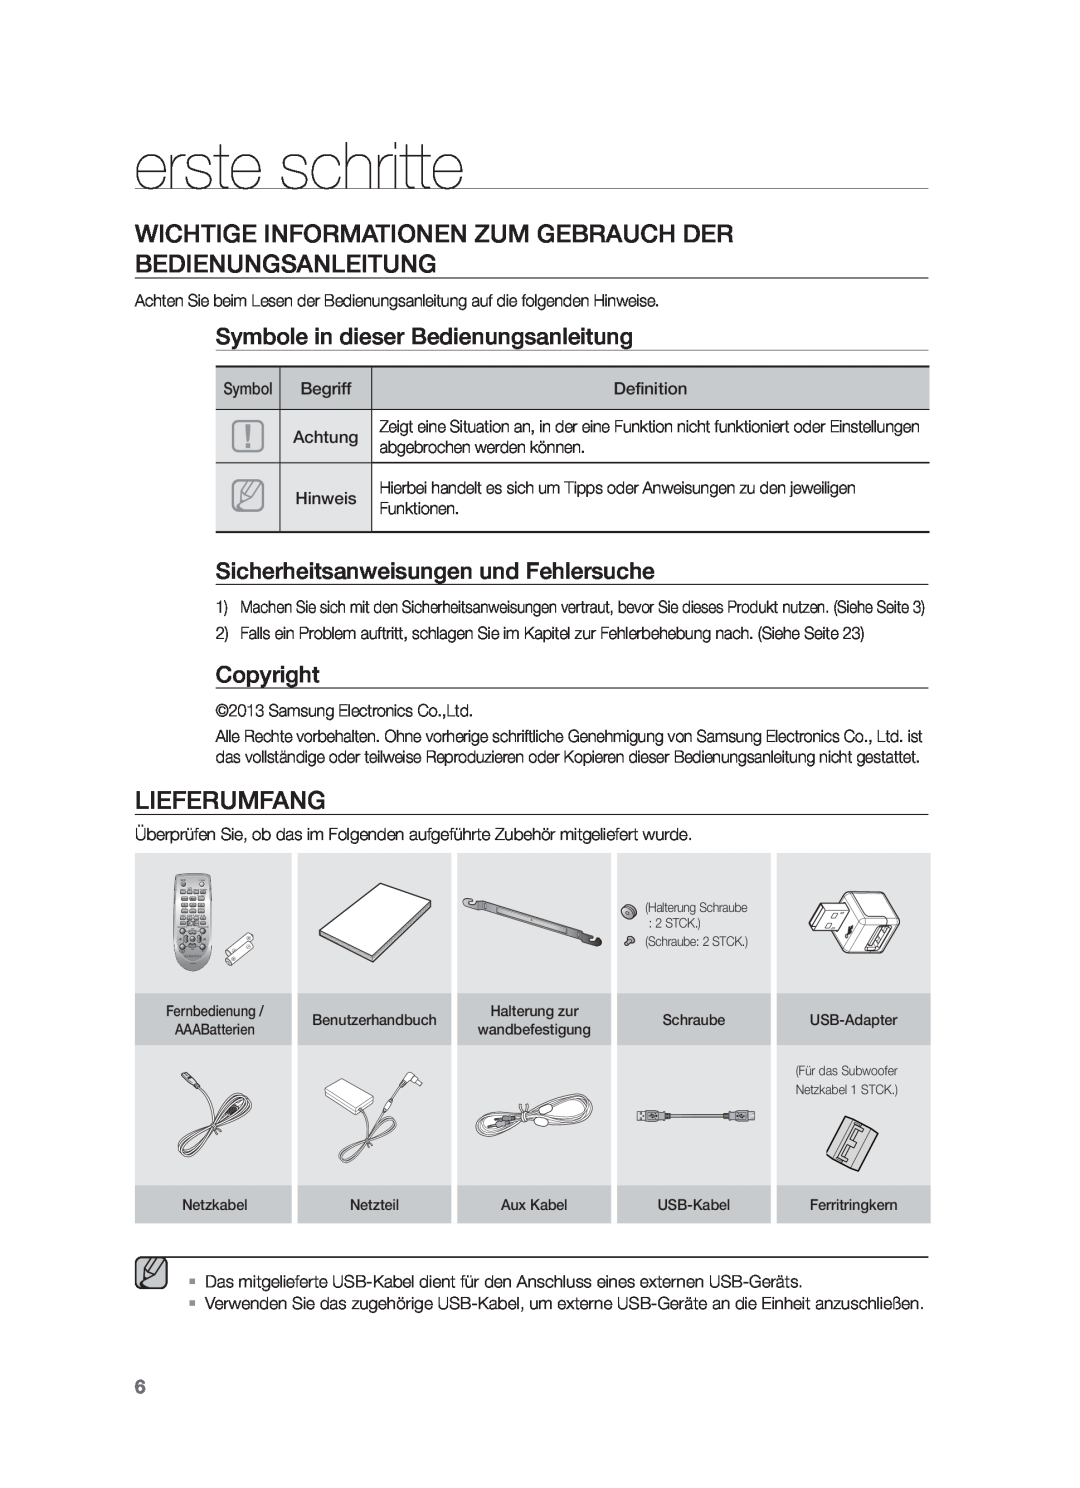 Samsung HW-F551/XN erste schritte, Wichtige Informationen Zum Gebrauch Der Bedienungsanleitung, Lieferumfang, Copyright 